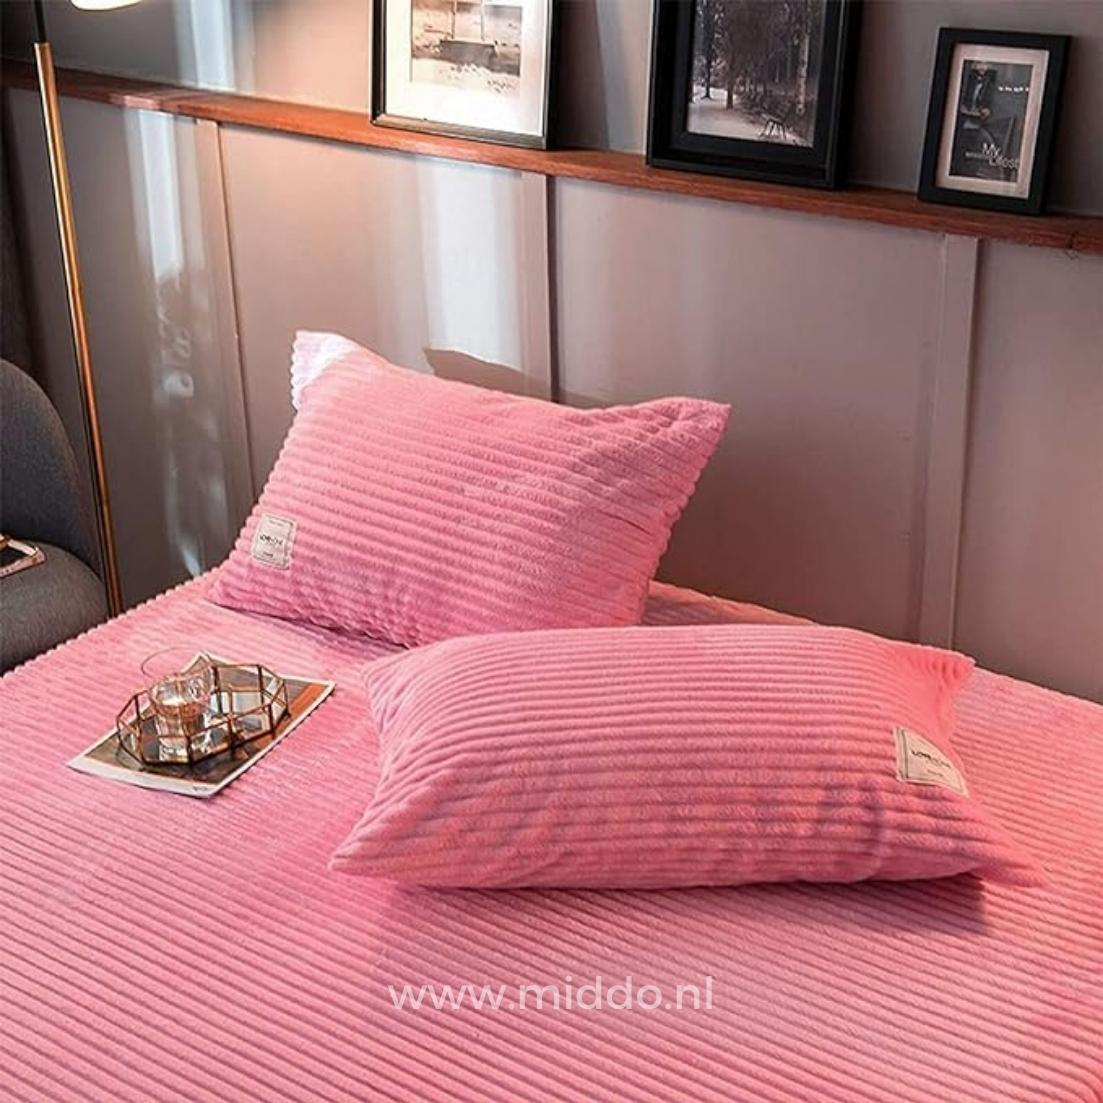 2 kussens met roze kussenslopen op een bed